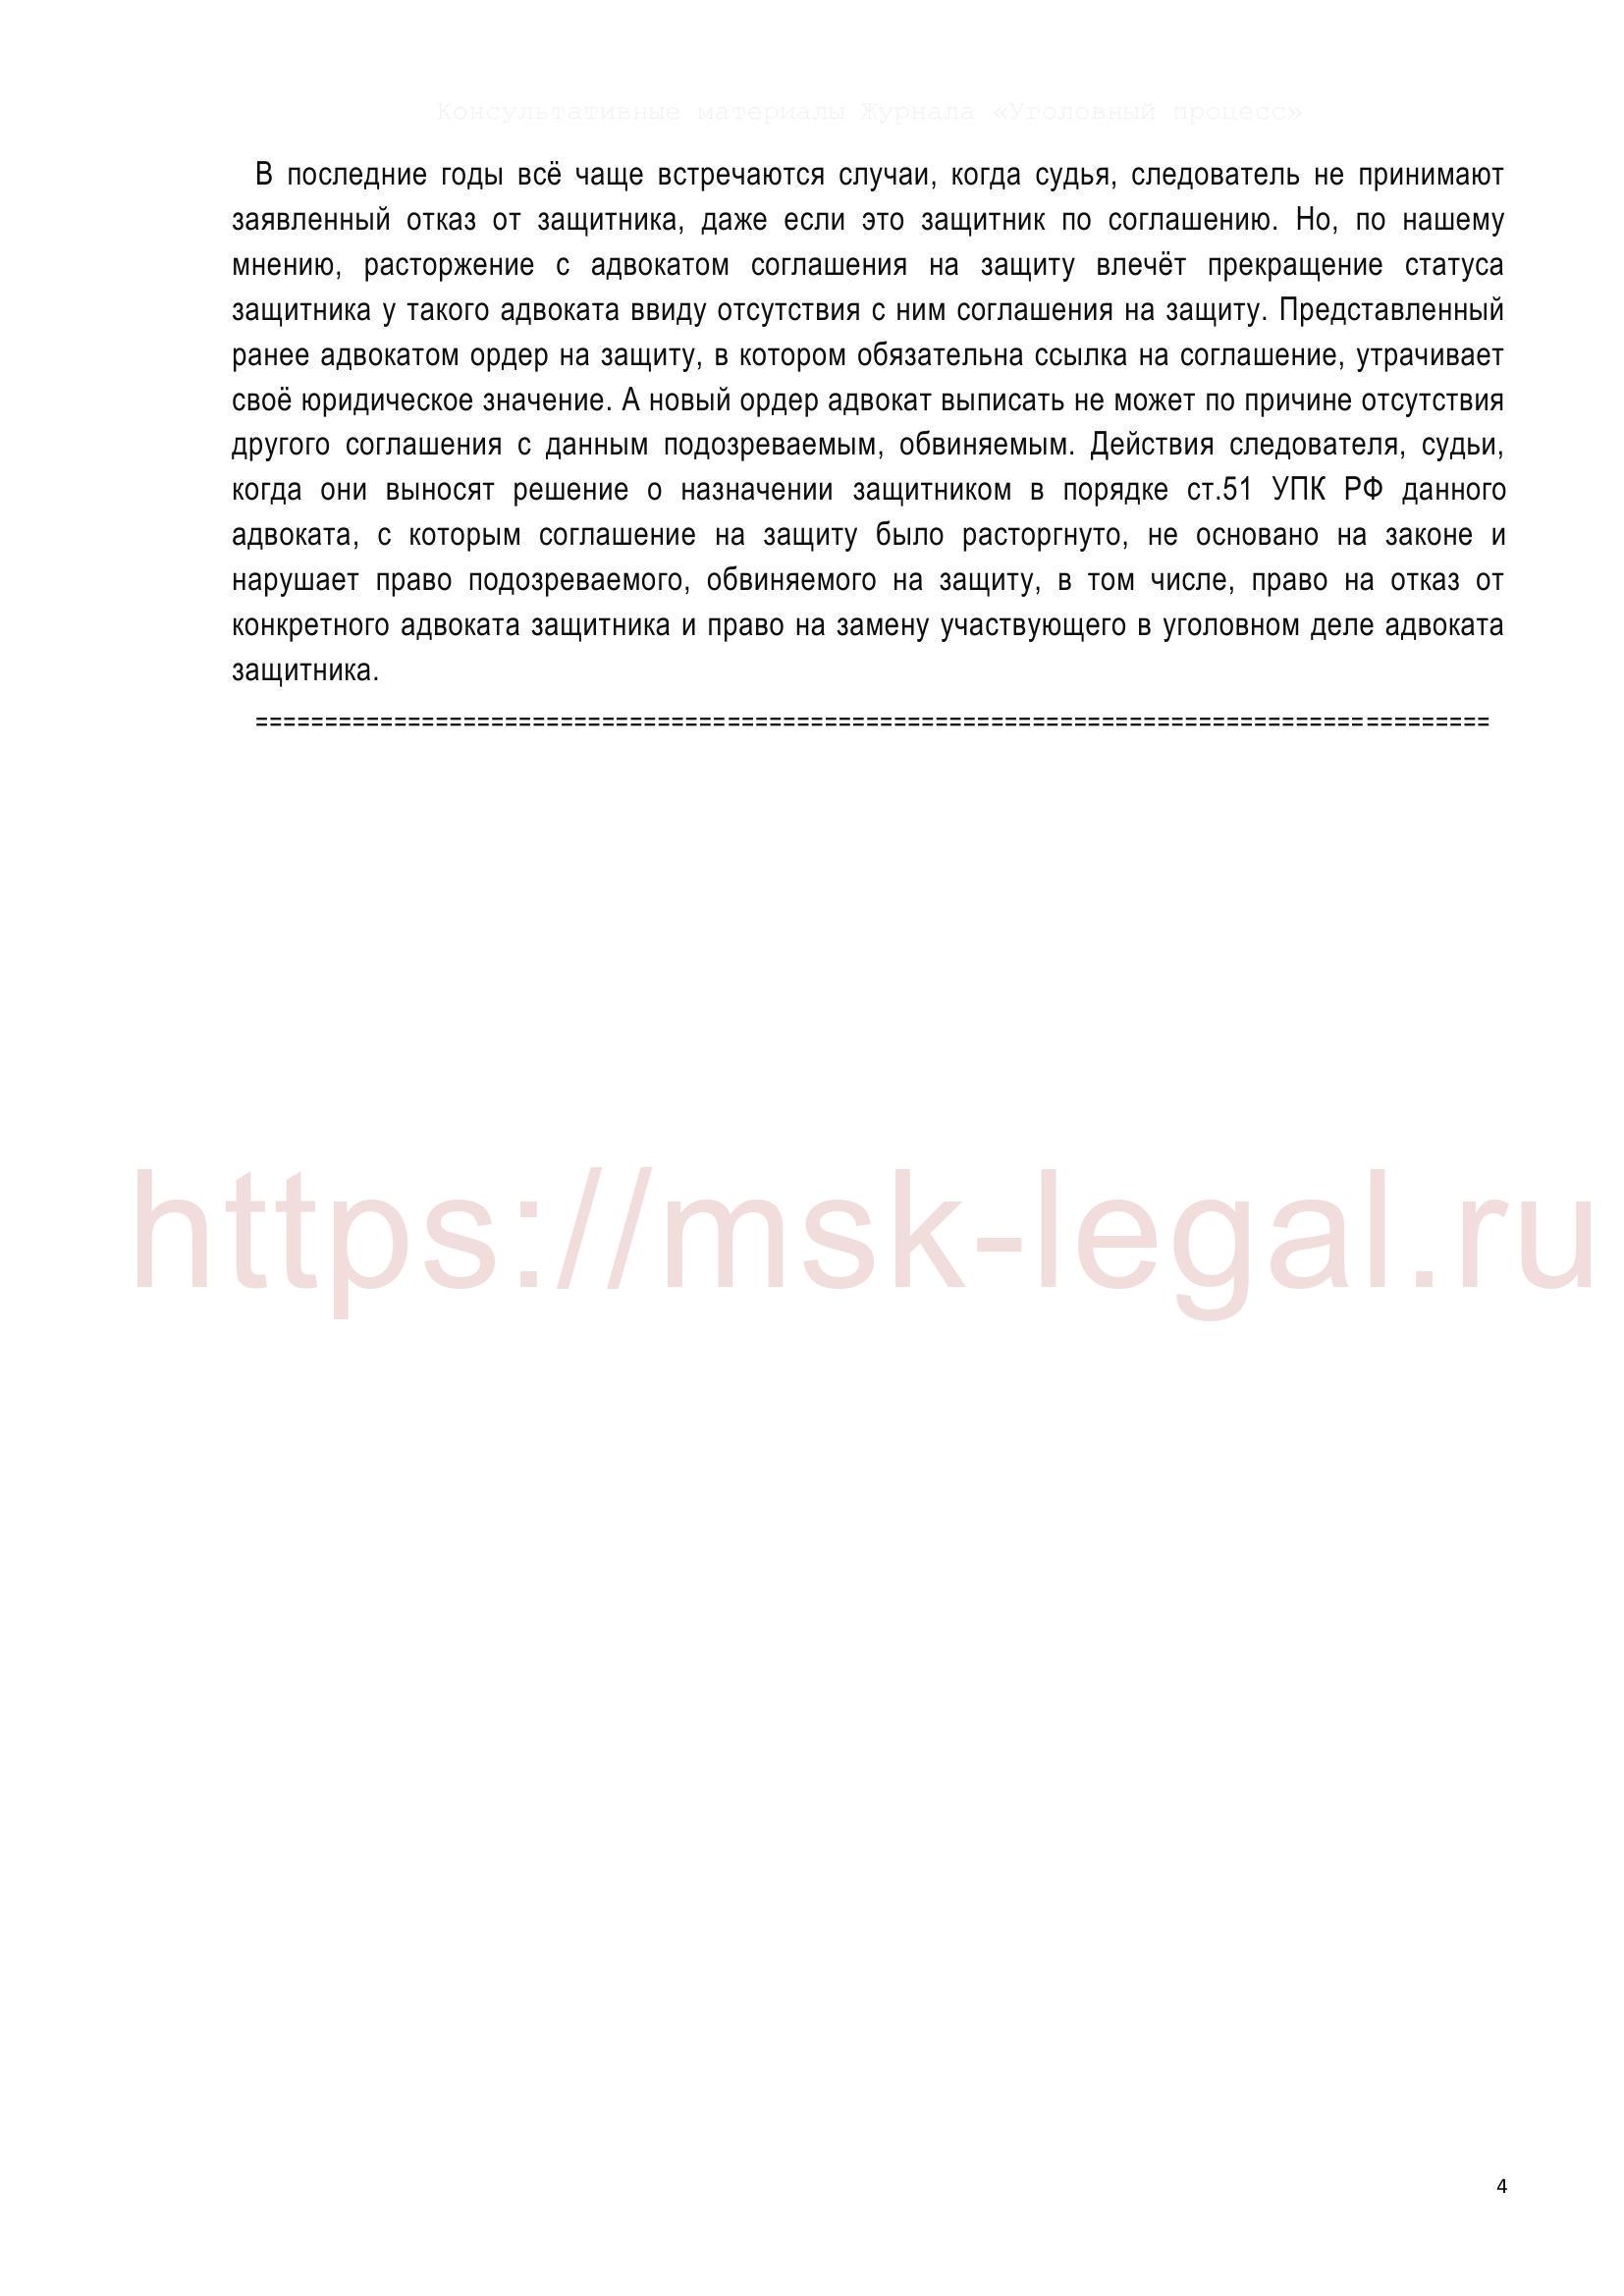 Ходатайство об отводе адвоката в соответствии со ст.72 УПК РФ